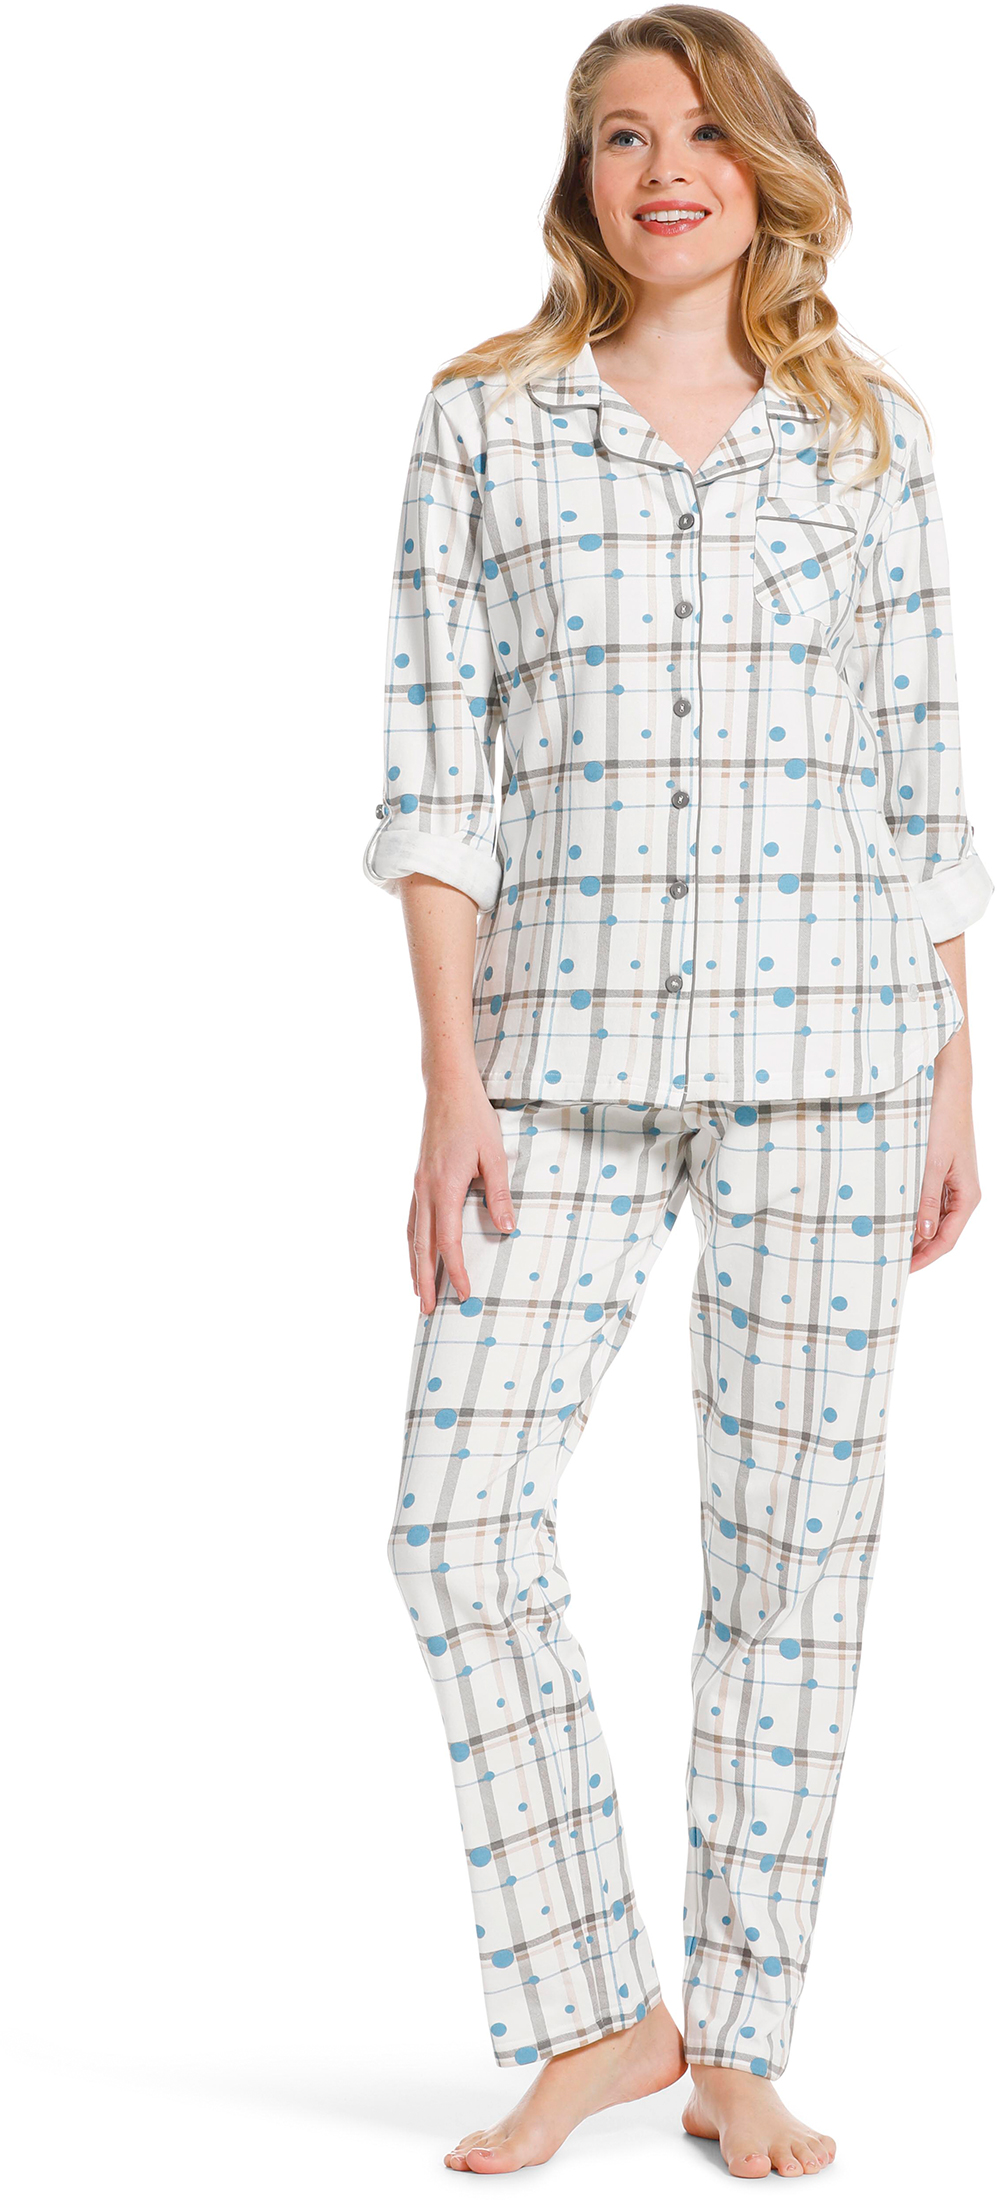 Pastunette dames doorknoop pyjama 20222 142 6 38